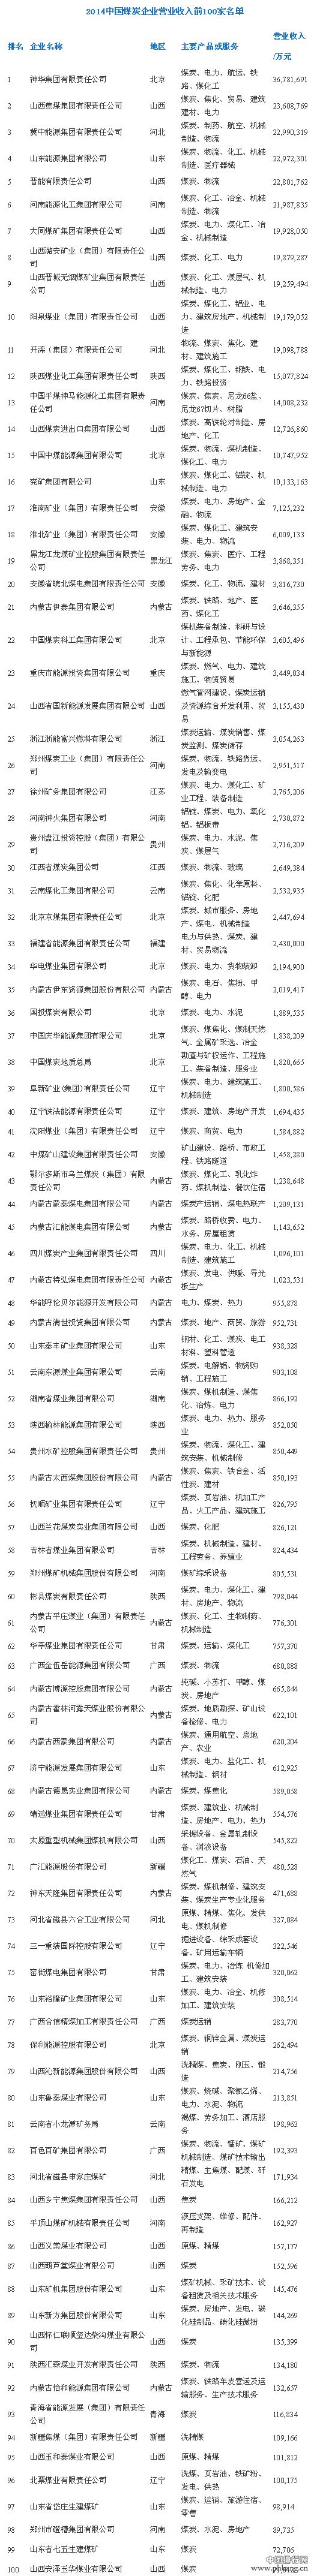 2014年中国煤炭企业营收前100强排名